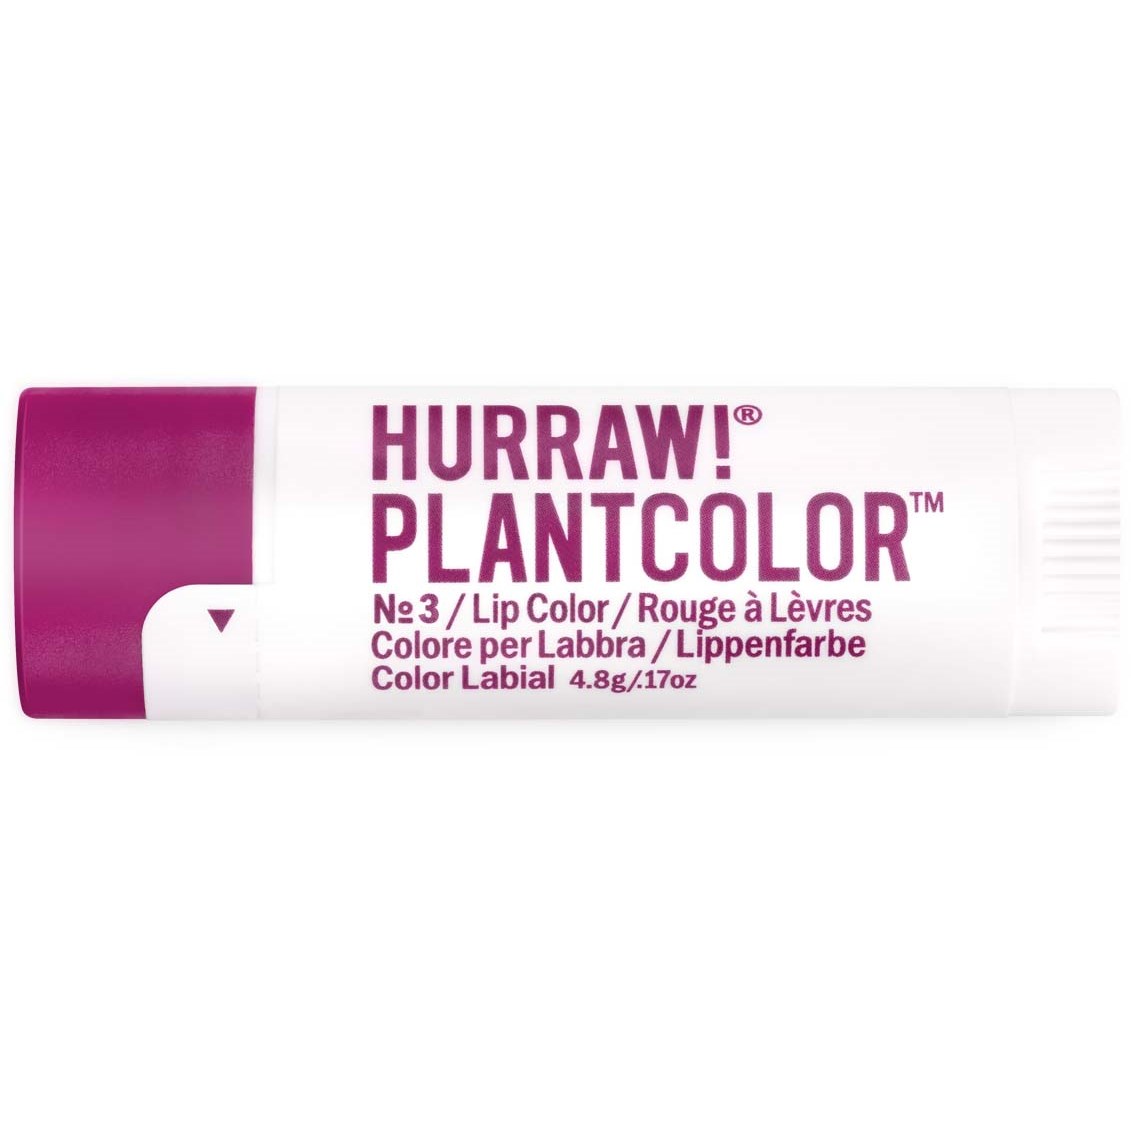 Hurraw! Plantcolor Lip Color No 3